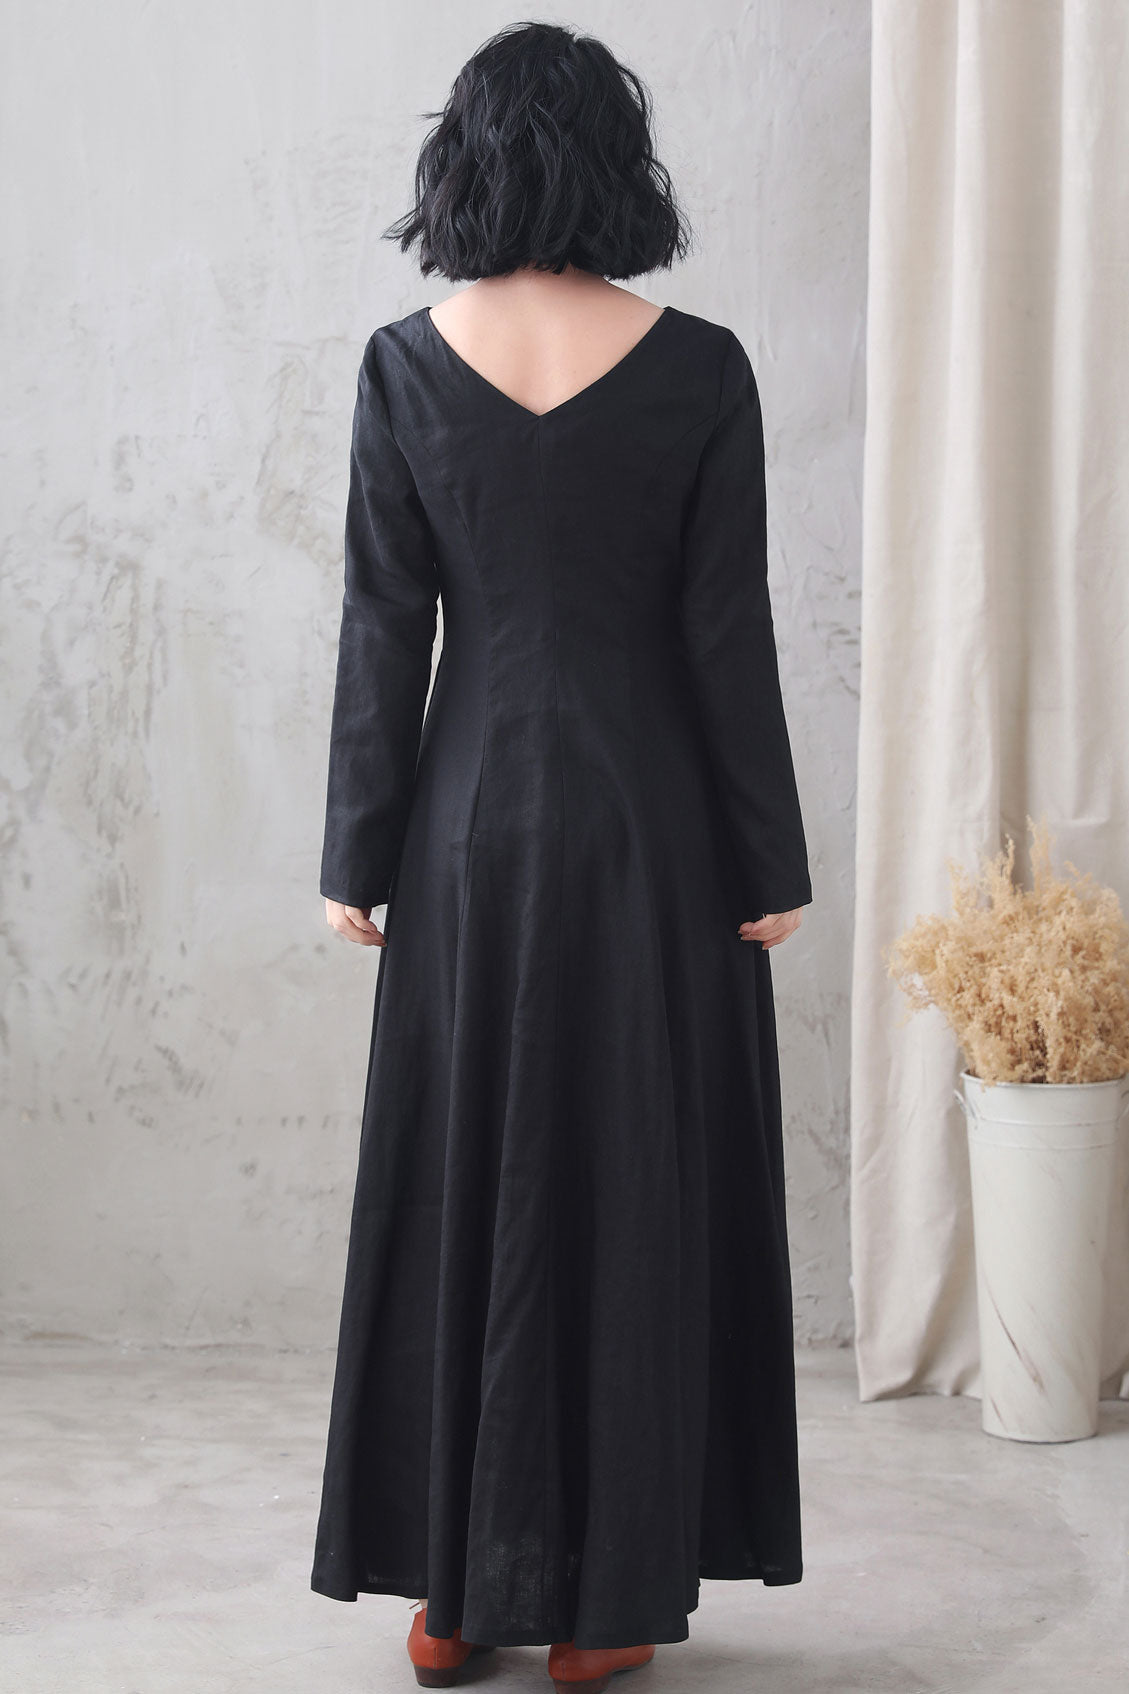 Black Vintage Inspired Mediveal Long Maxi Linen Dress 3332